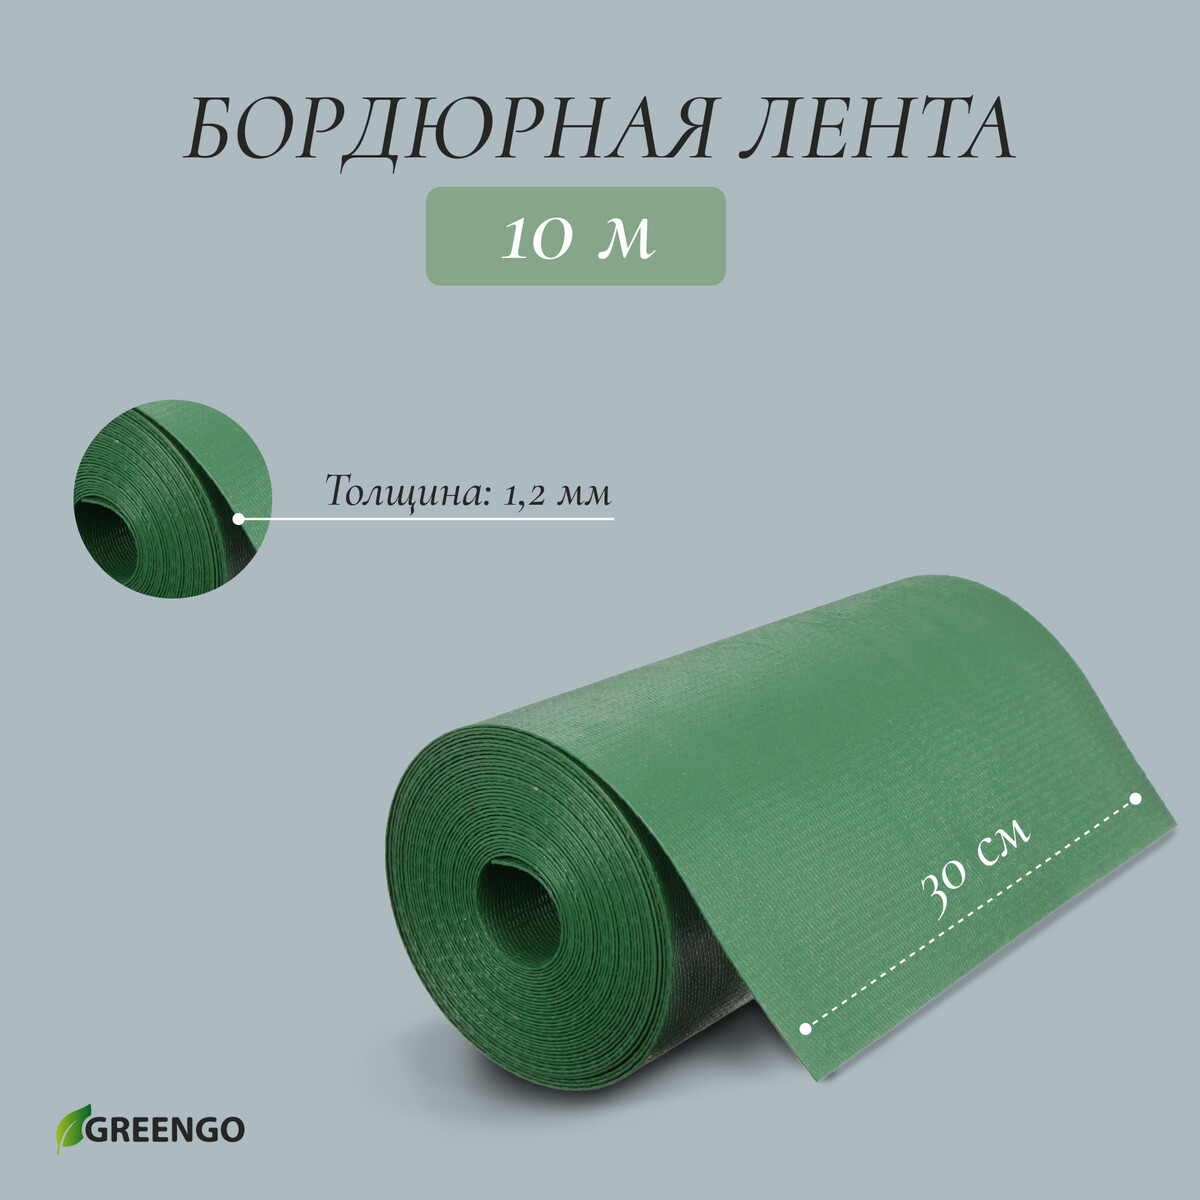 Лента бордюрная, 0.3 × 10 м, толщина 1.2 мм, пластиковая, зеленая, greengo лента бордюрная 0 15 × 9 м толщина 1 2 мм пластиковая фигурная коричневая greengo